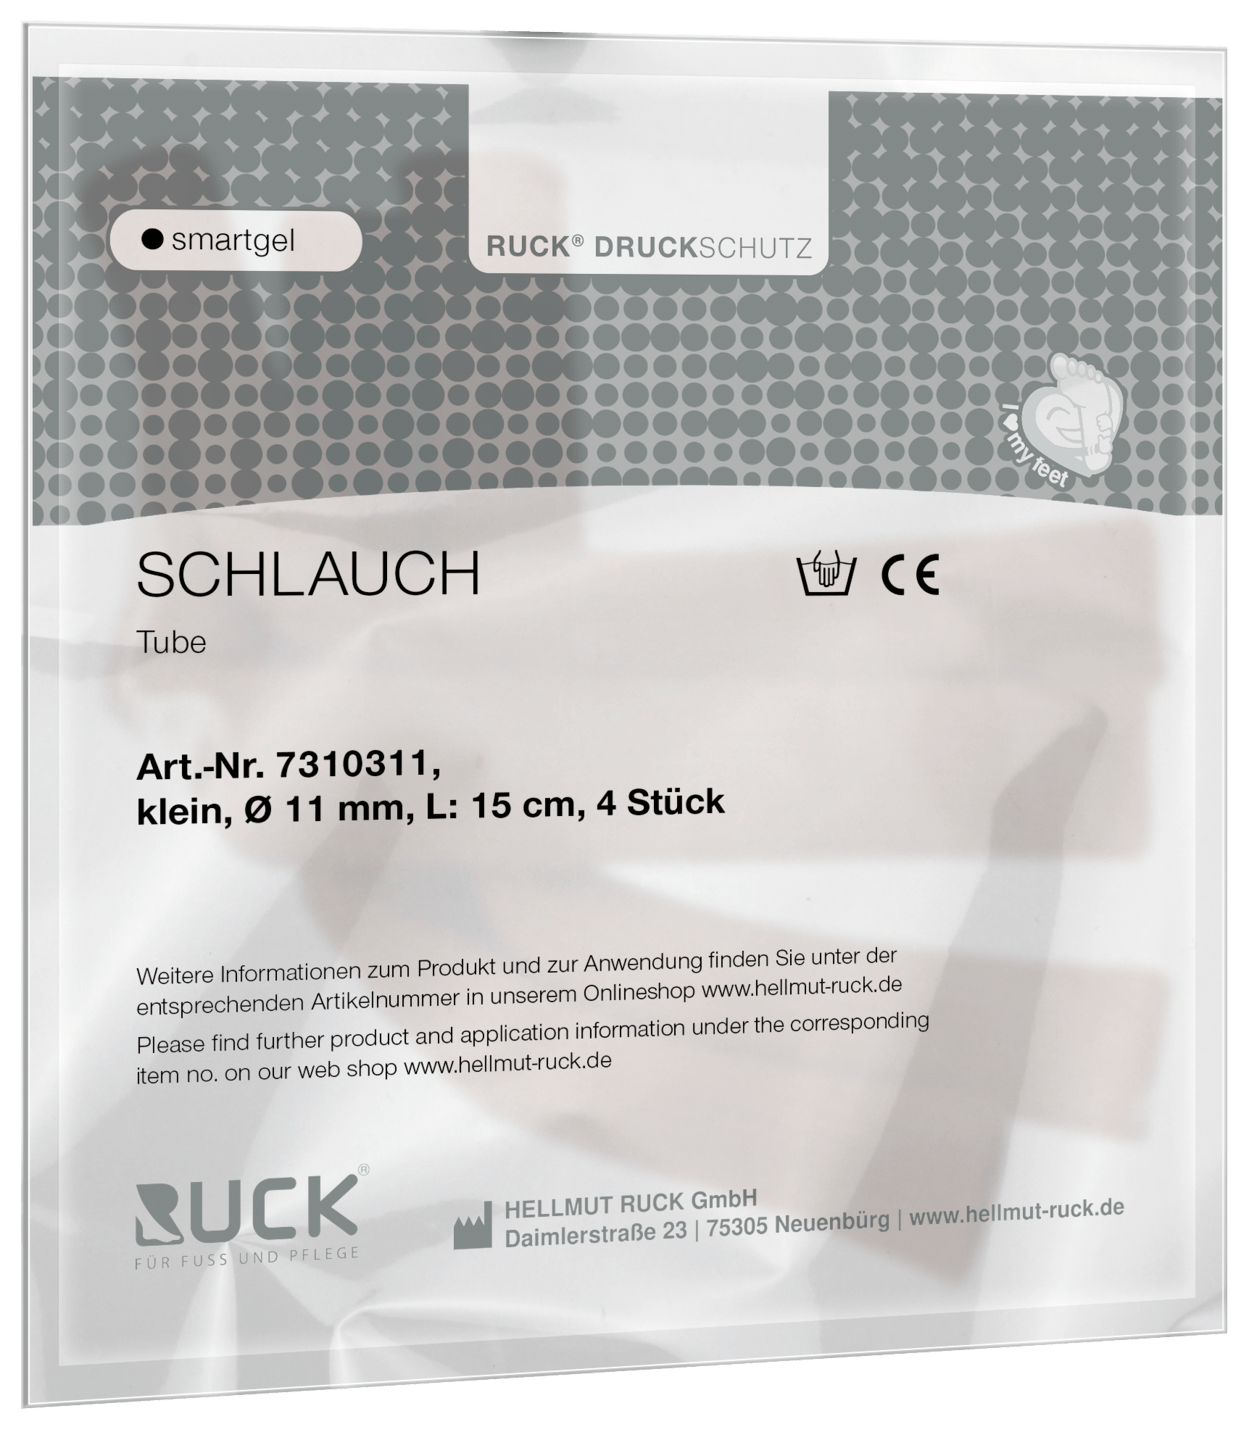 RUCK DRUCKSCHUTZ - Schlauch